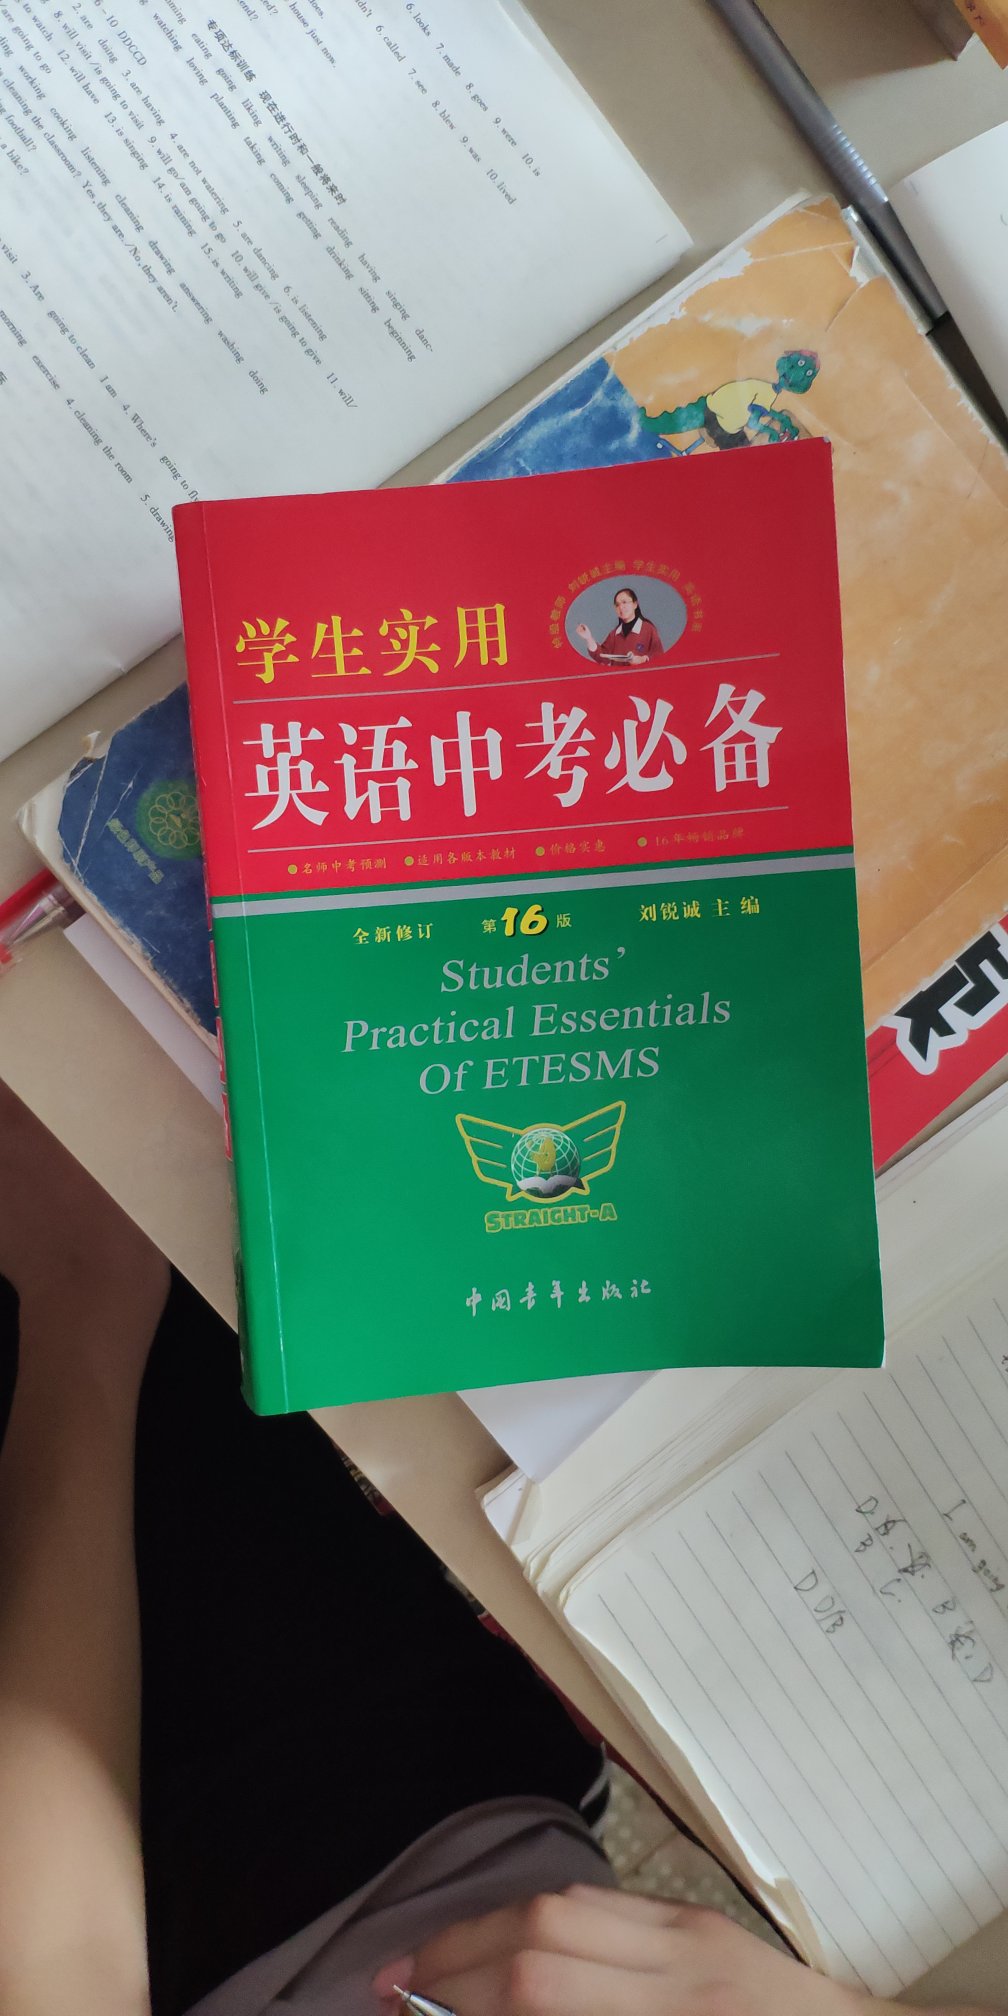 给侄子买的，刘锐诚老师主编的书还是那么的专业，希望我侄子以后可以学好英语。?